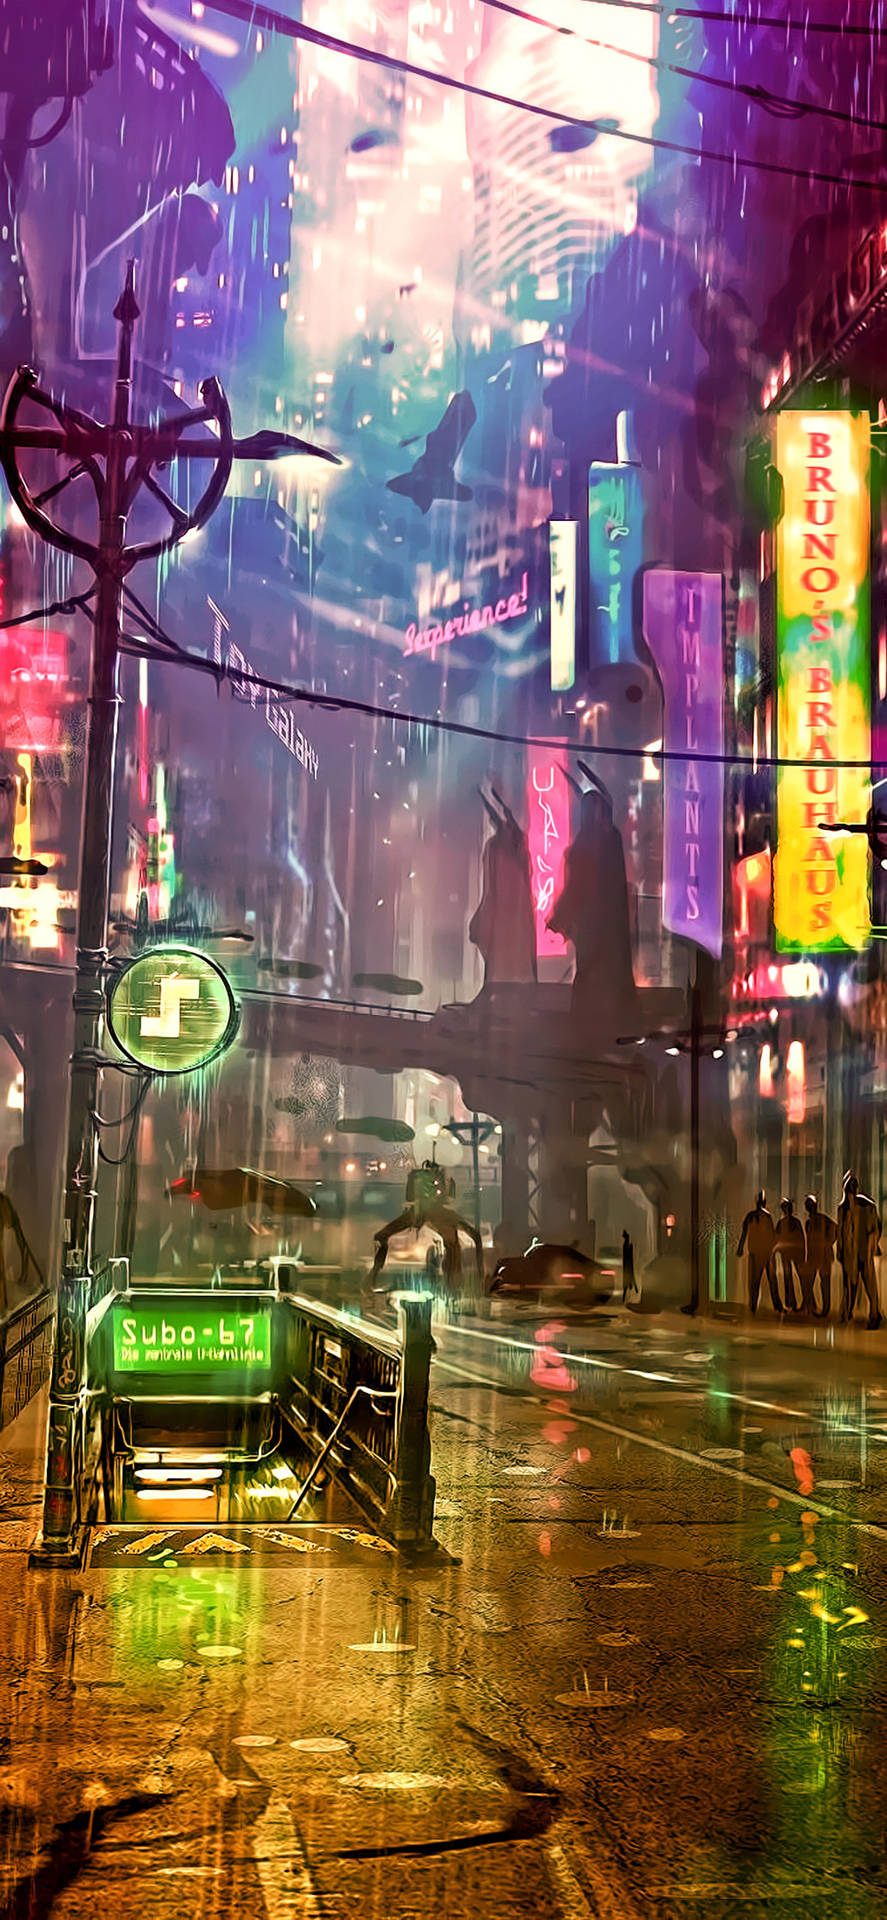 Futuristic City Artwork Cyberpunk Iphone X Background